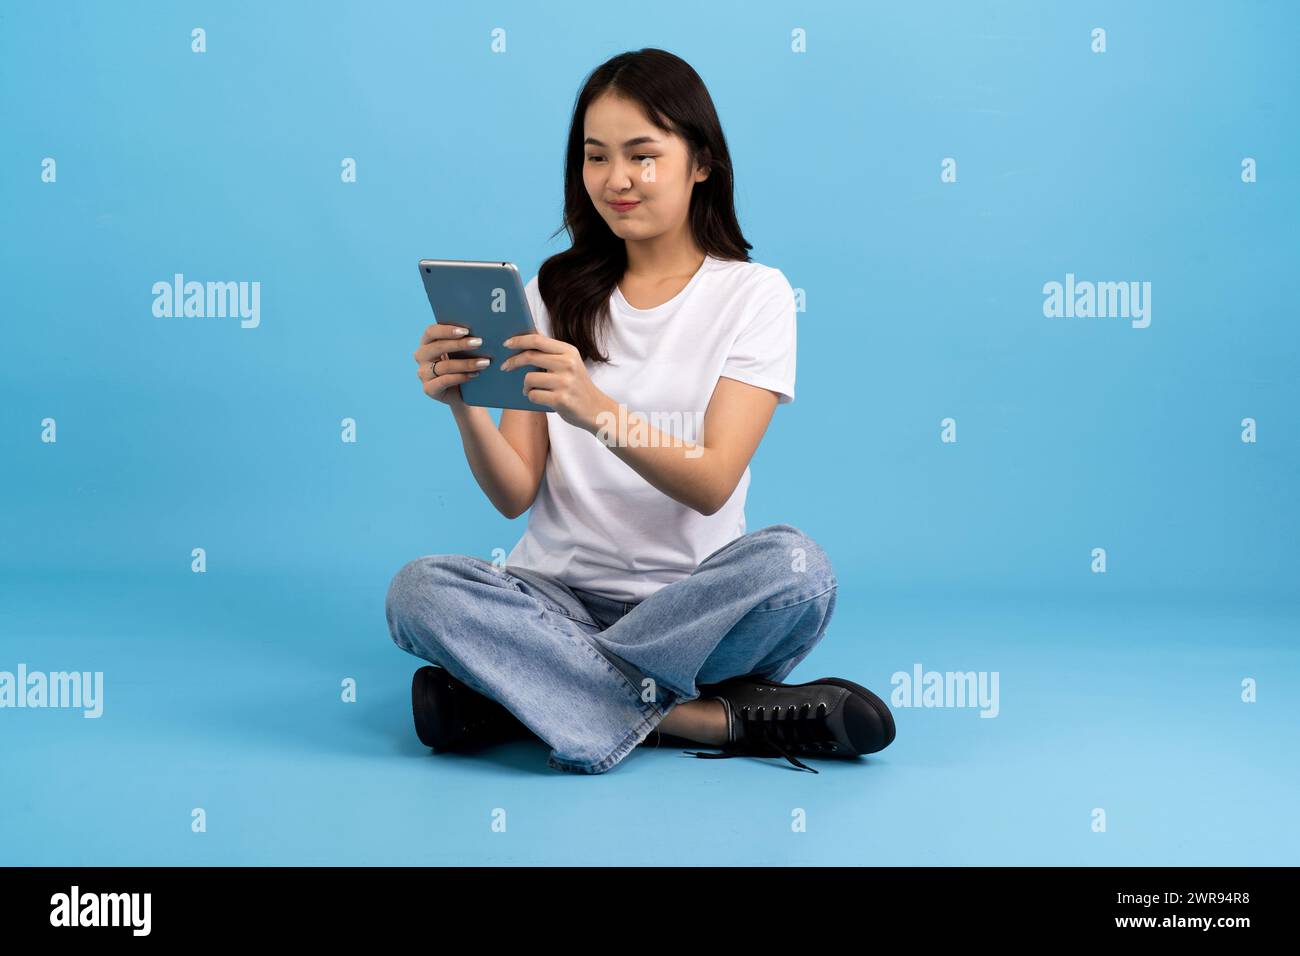 Schönes Mädchen Happy hält Tablet-Computer auf blauem Hintergrund Sitzen und lächeln mit einer entspannten Haltung Genießen Sie das Surfen im Internet mit modernen Geräten Stockfoto